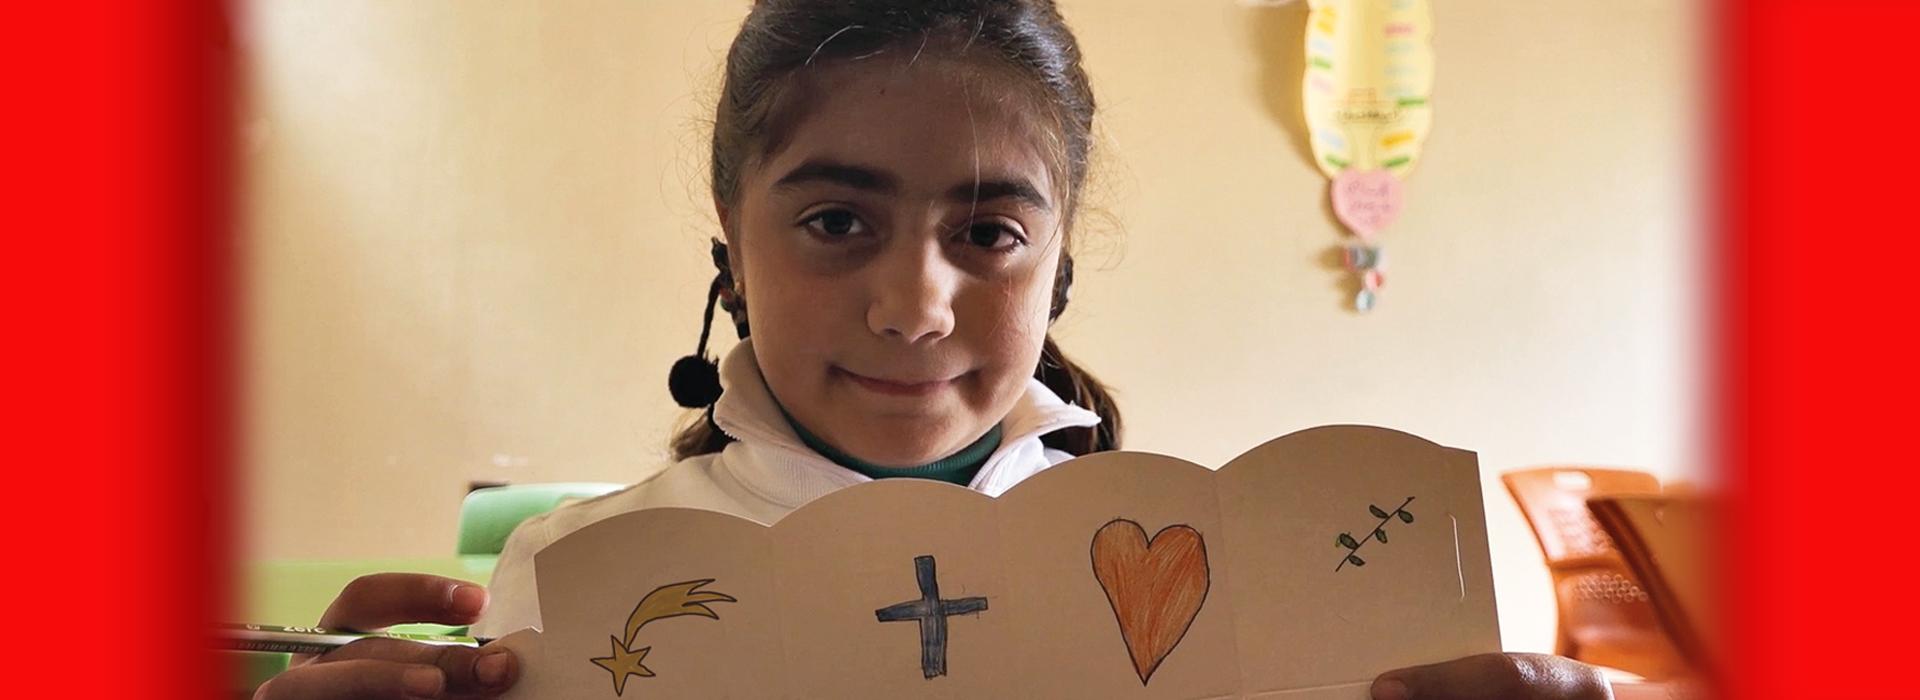 A Natale aiutiamo i cristiani di Siria e Libano!